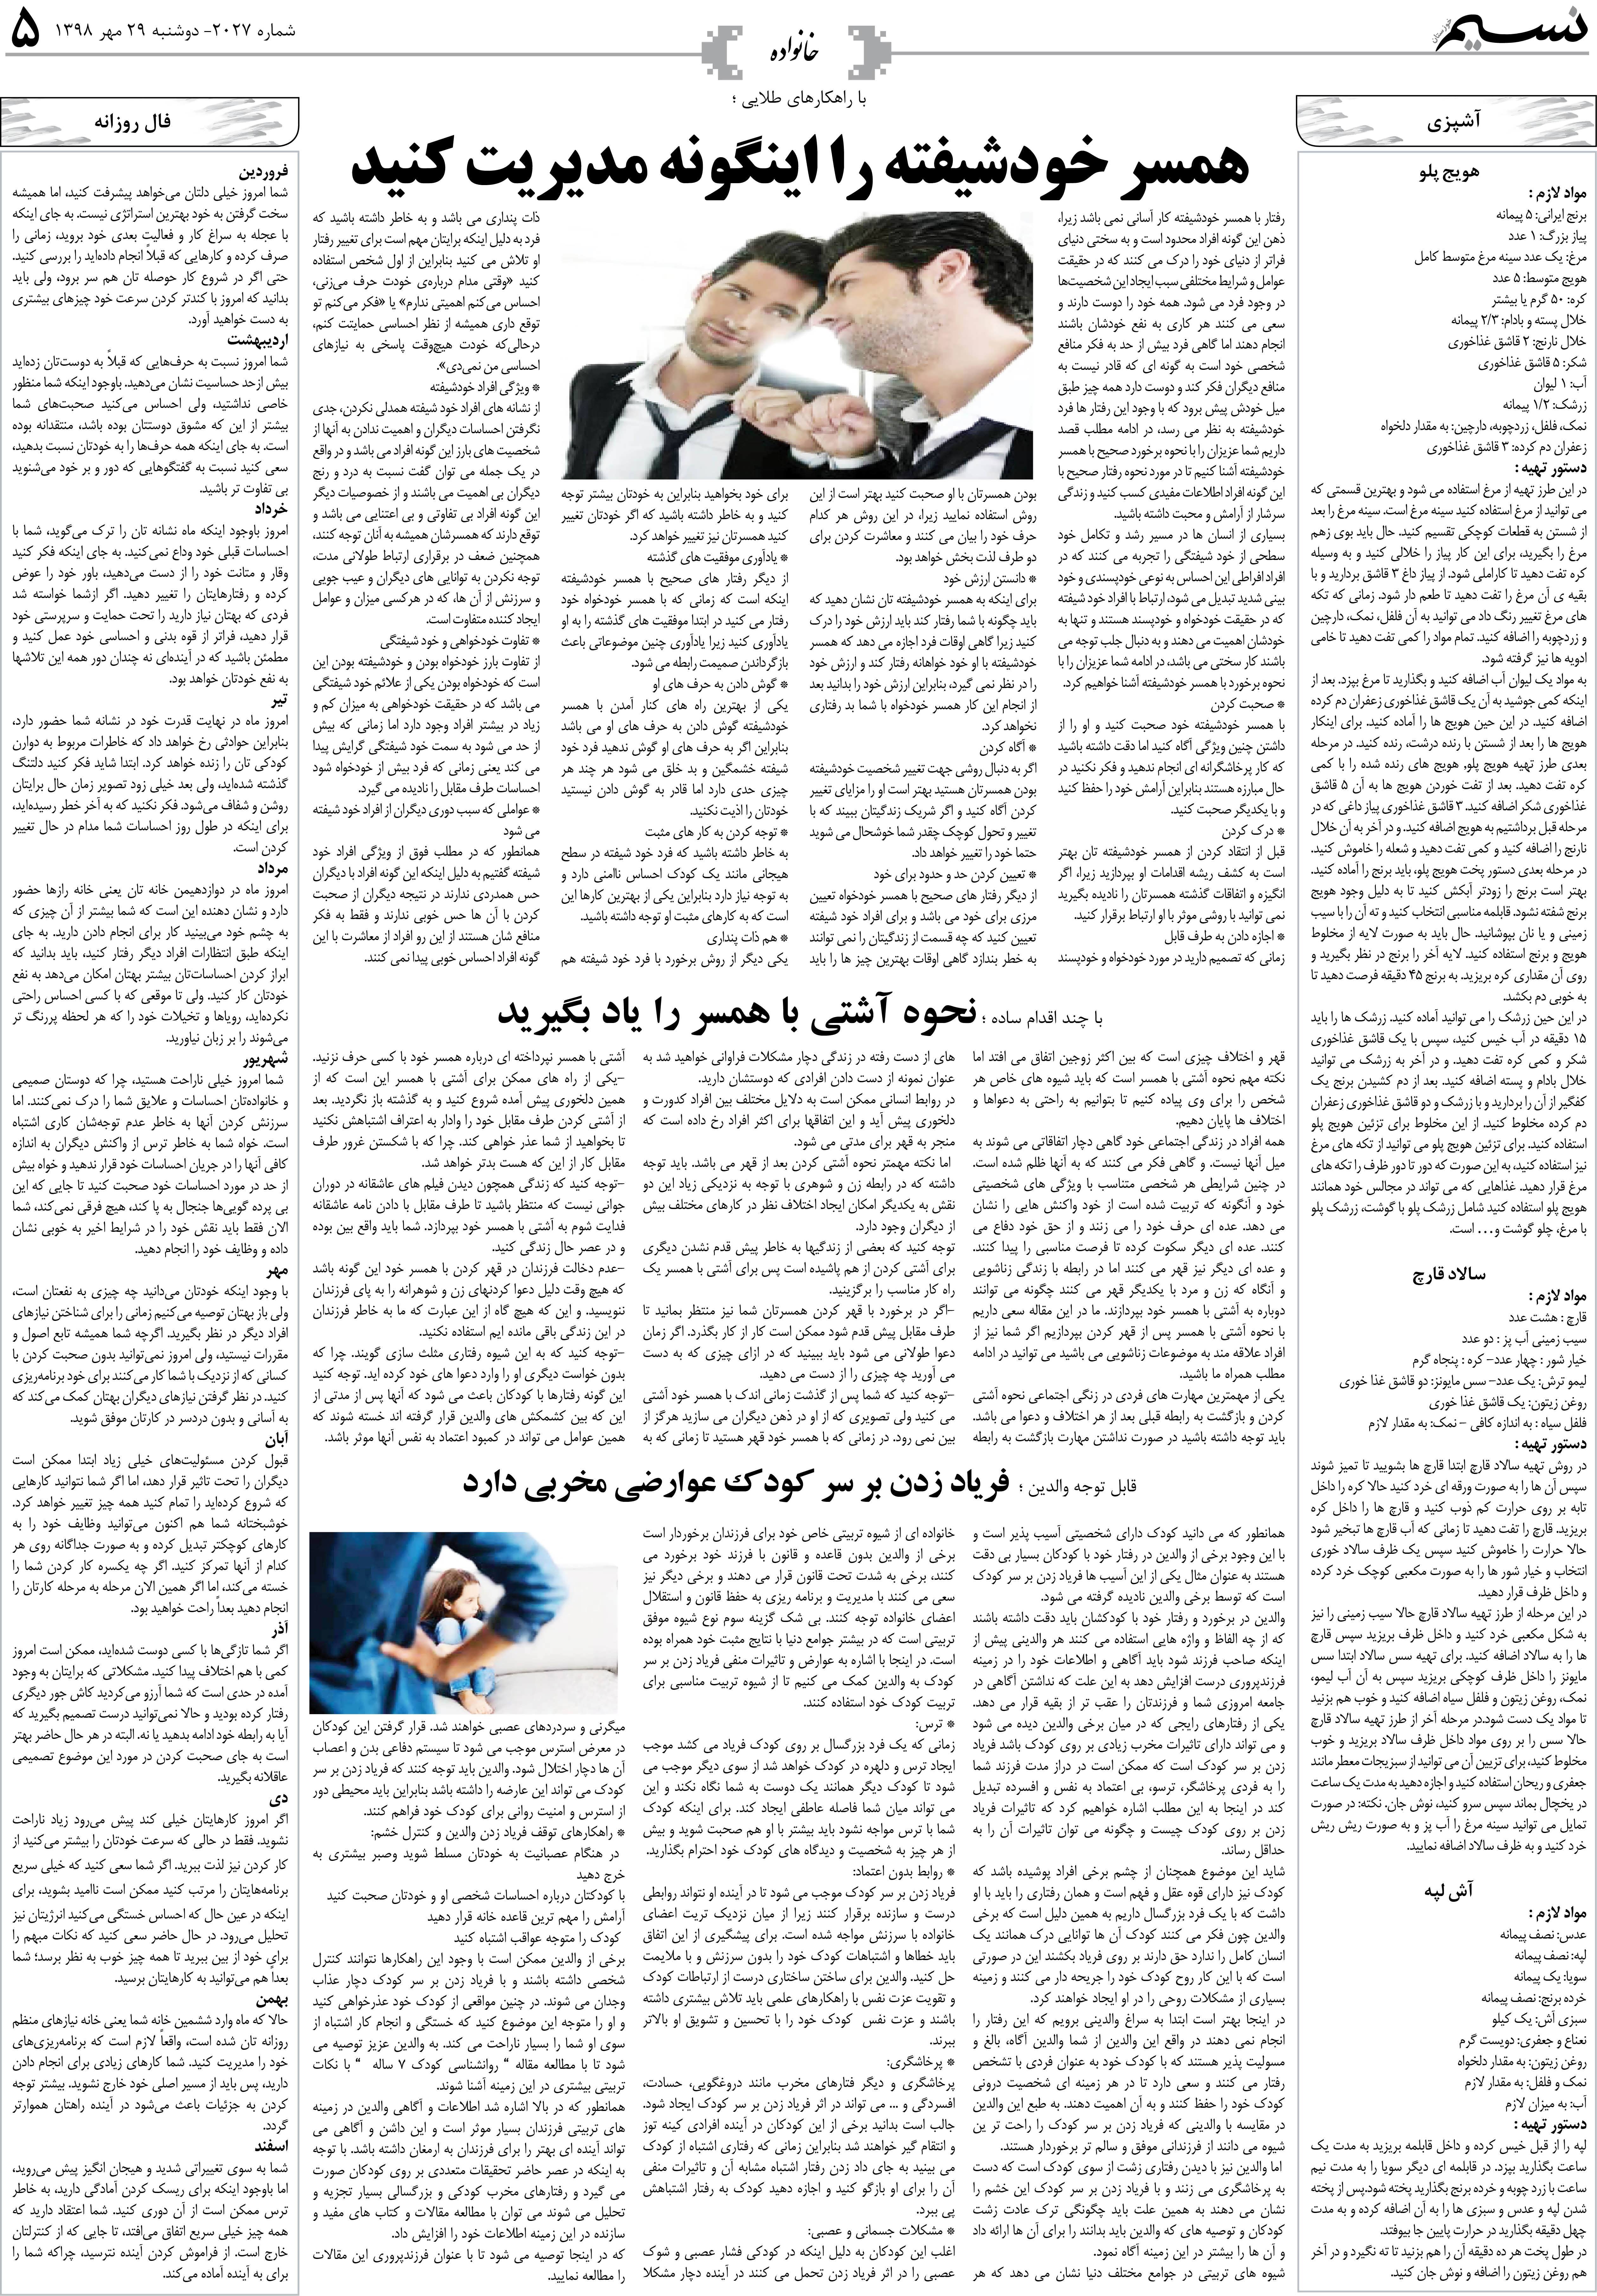 صفحه خانواده روزنامه نسیم شماره 2027